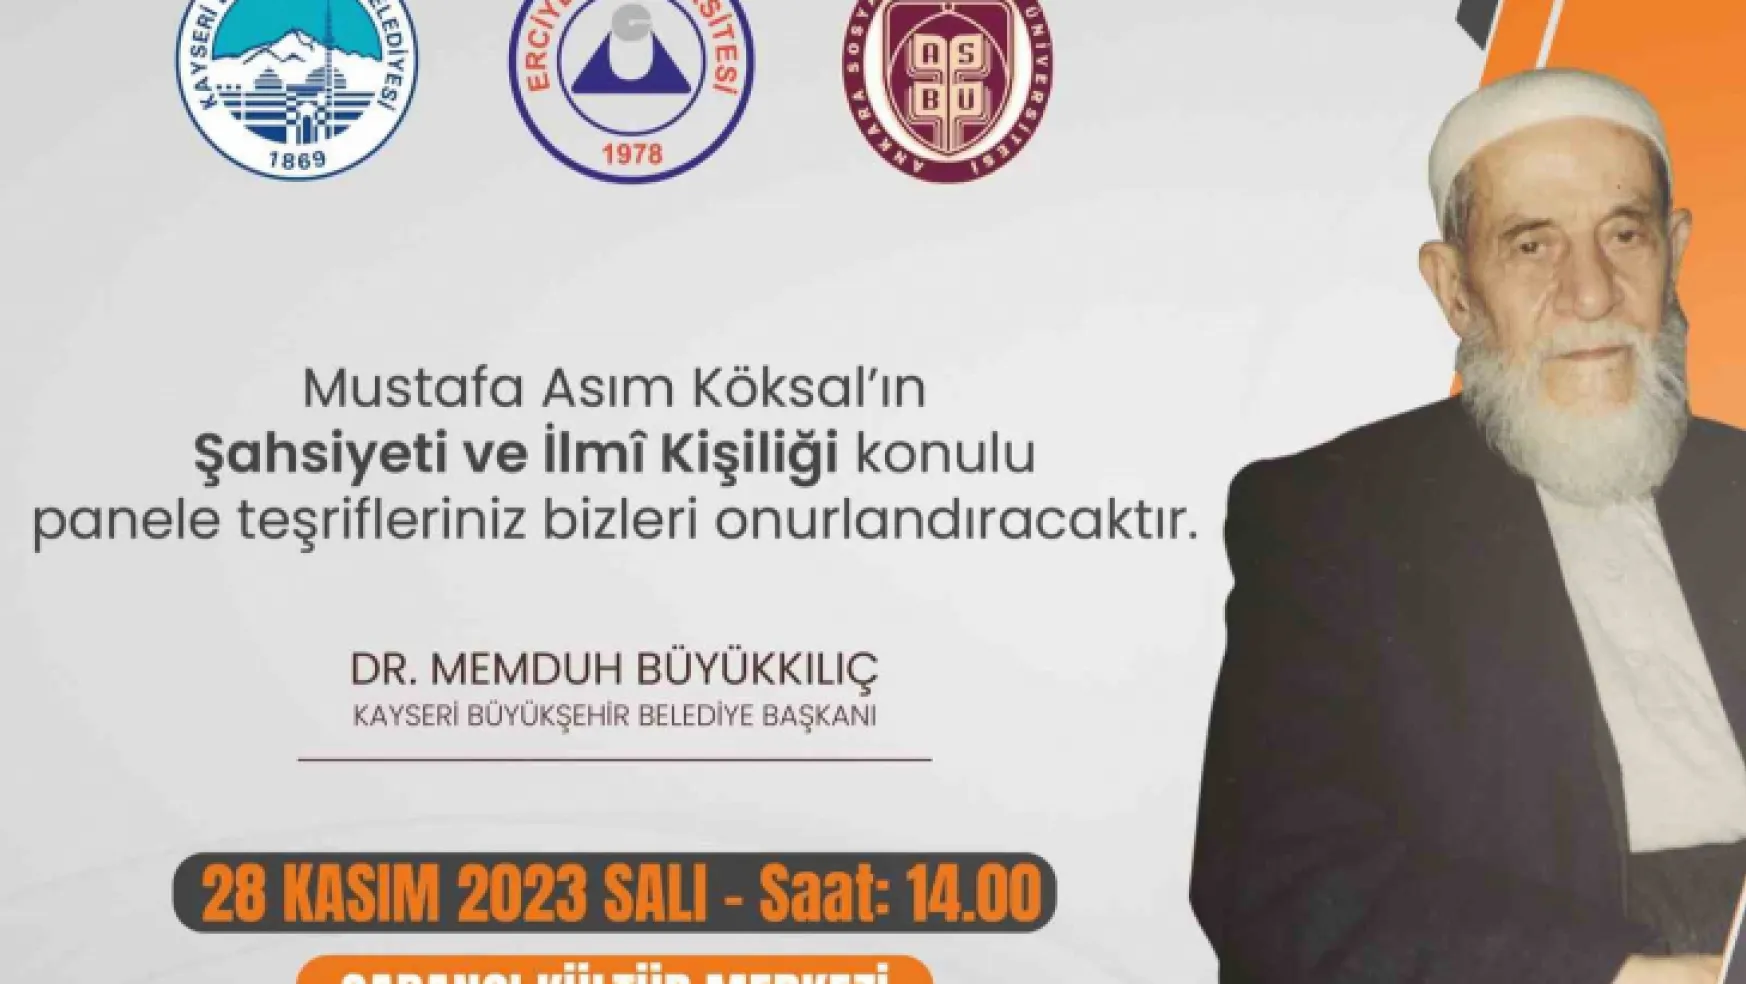 'Mustafa Asım Köksal'ın Şahsiyeti Ve İlmi Kişiliği' konulu panel